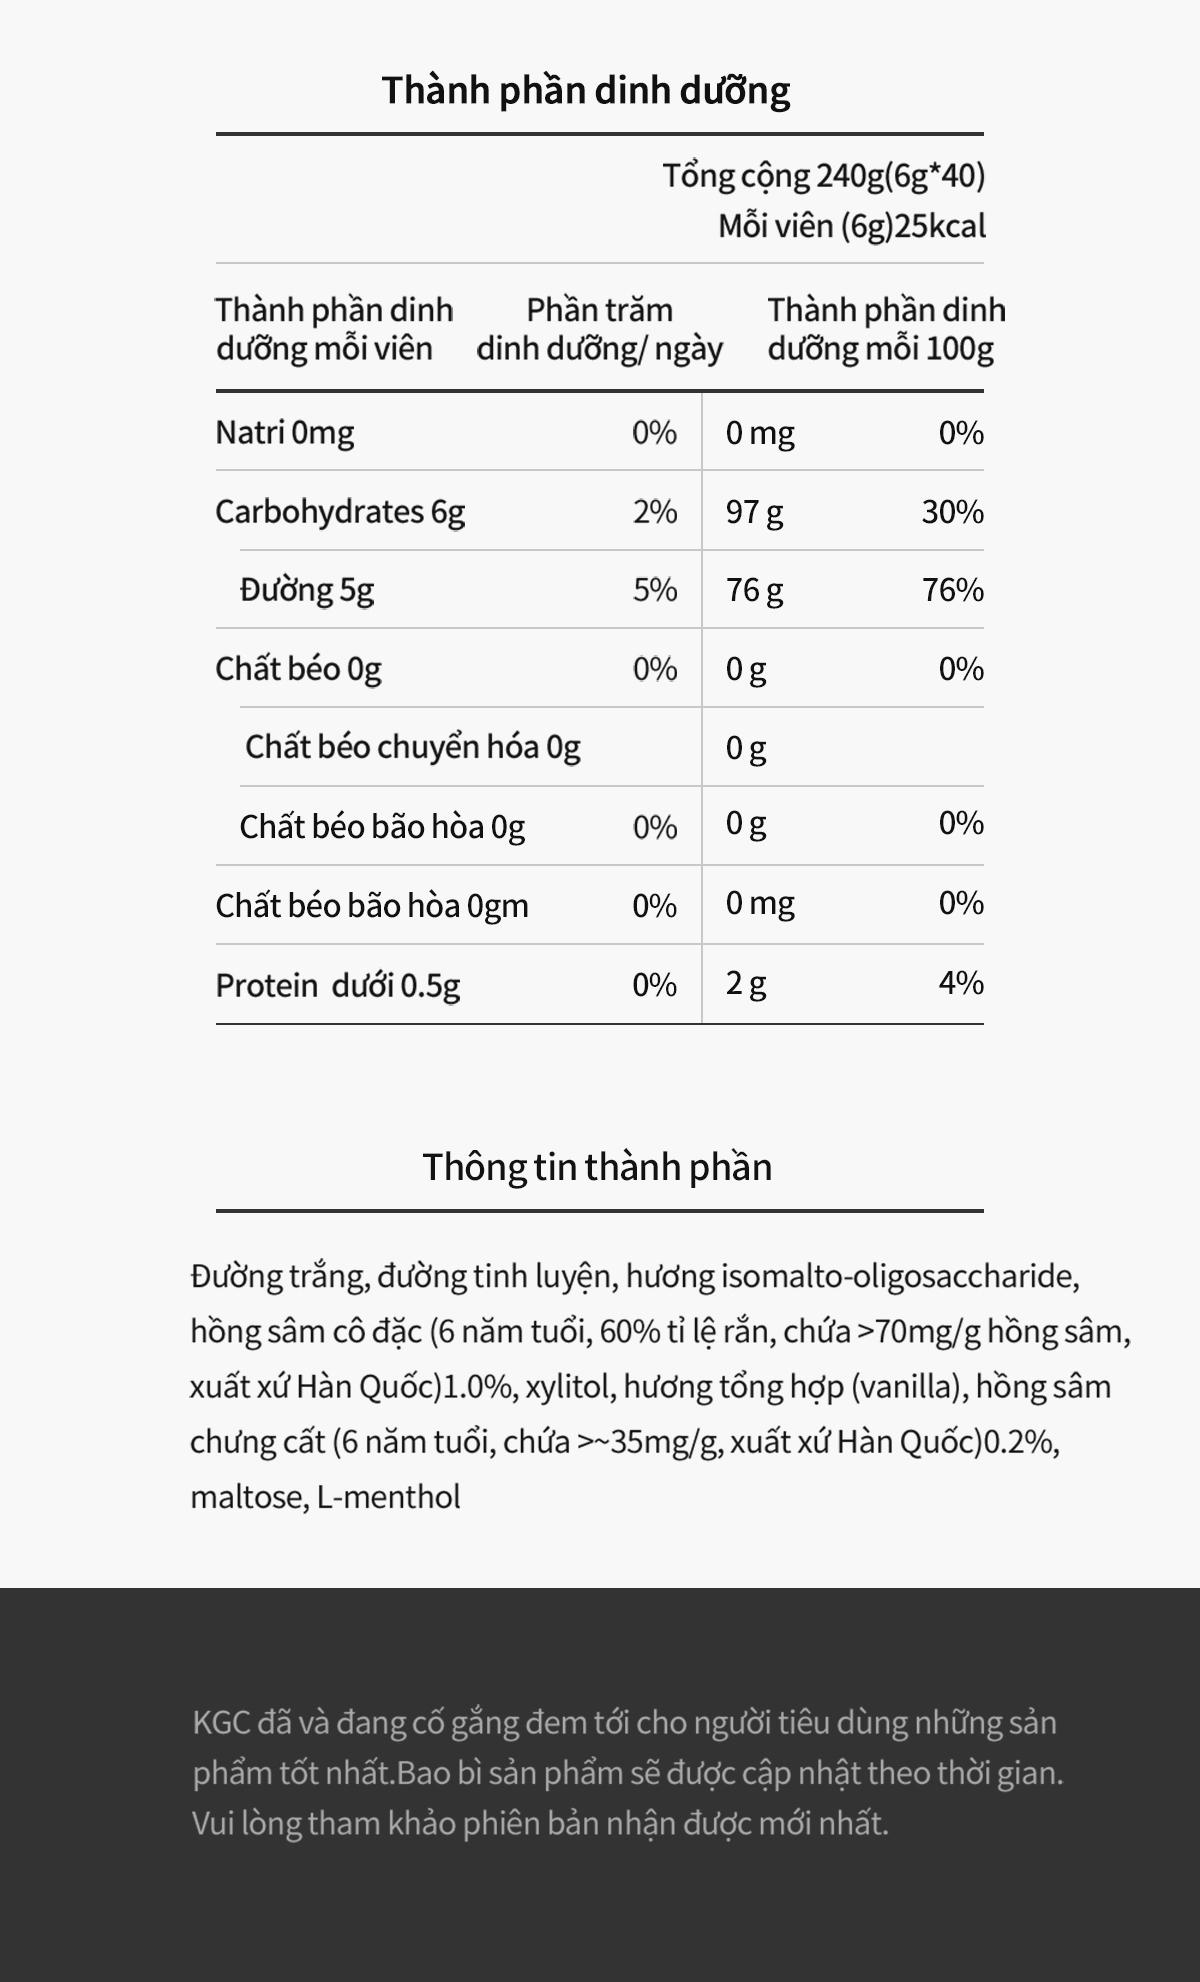 Thông tin về thành phần và dinh dưỡng của sản phẩm kẹo sâm KRG